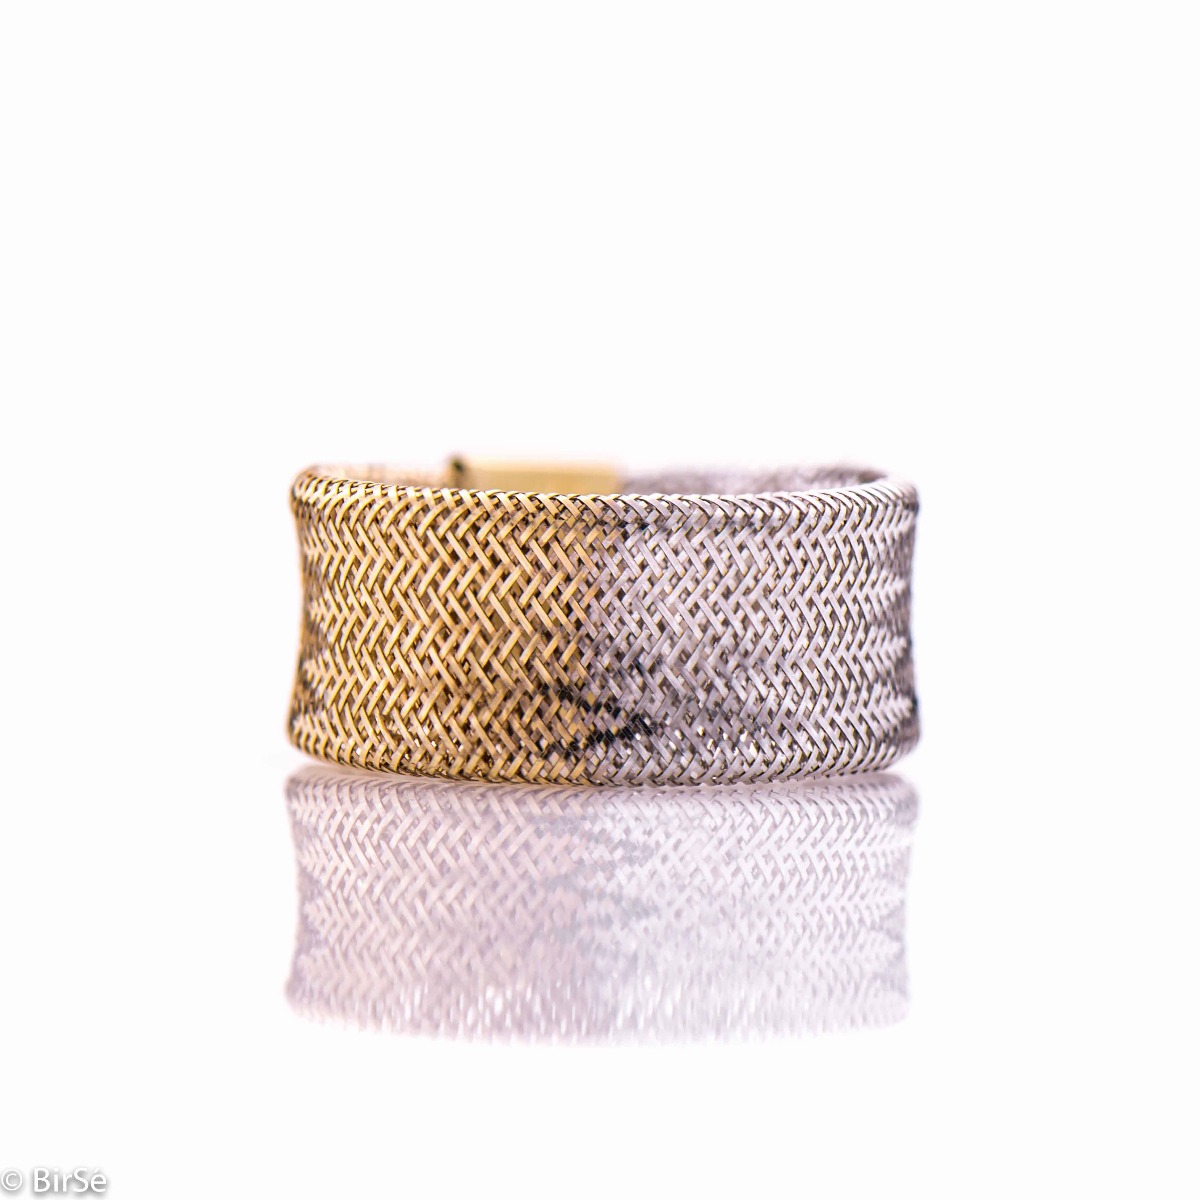 Златен пръстен - Ластик